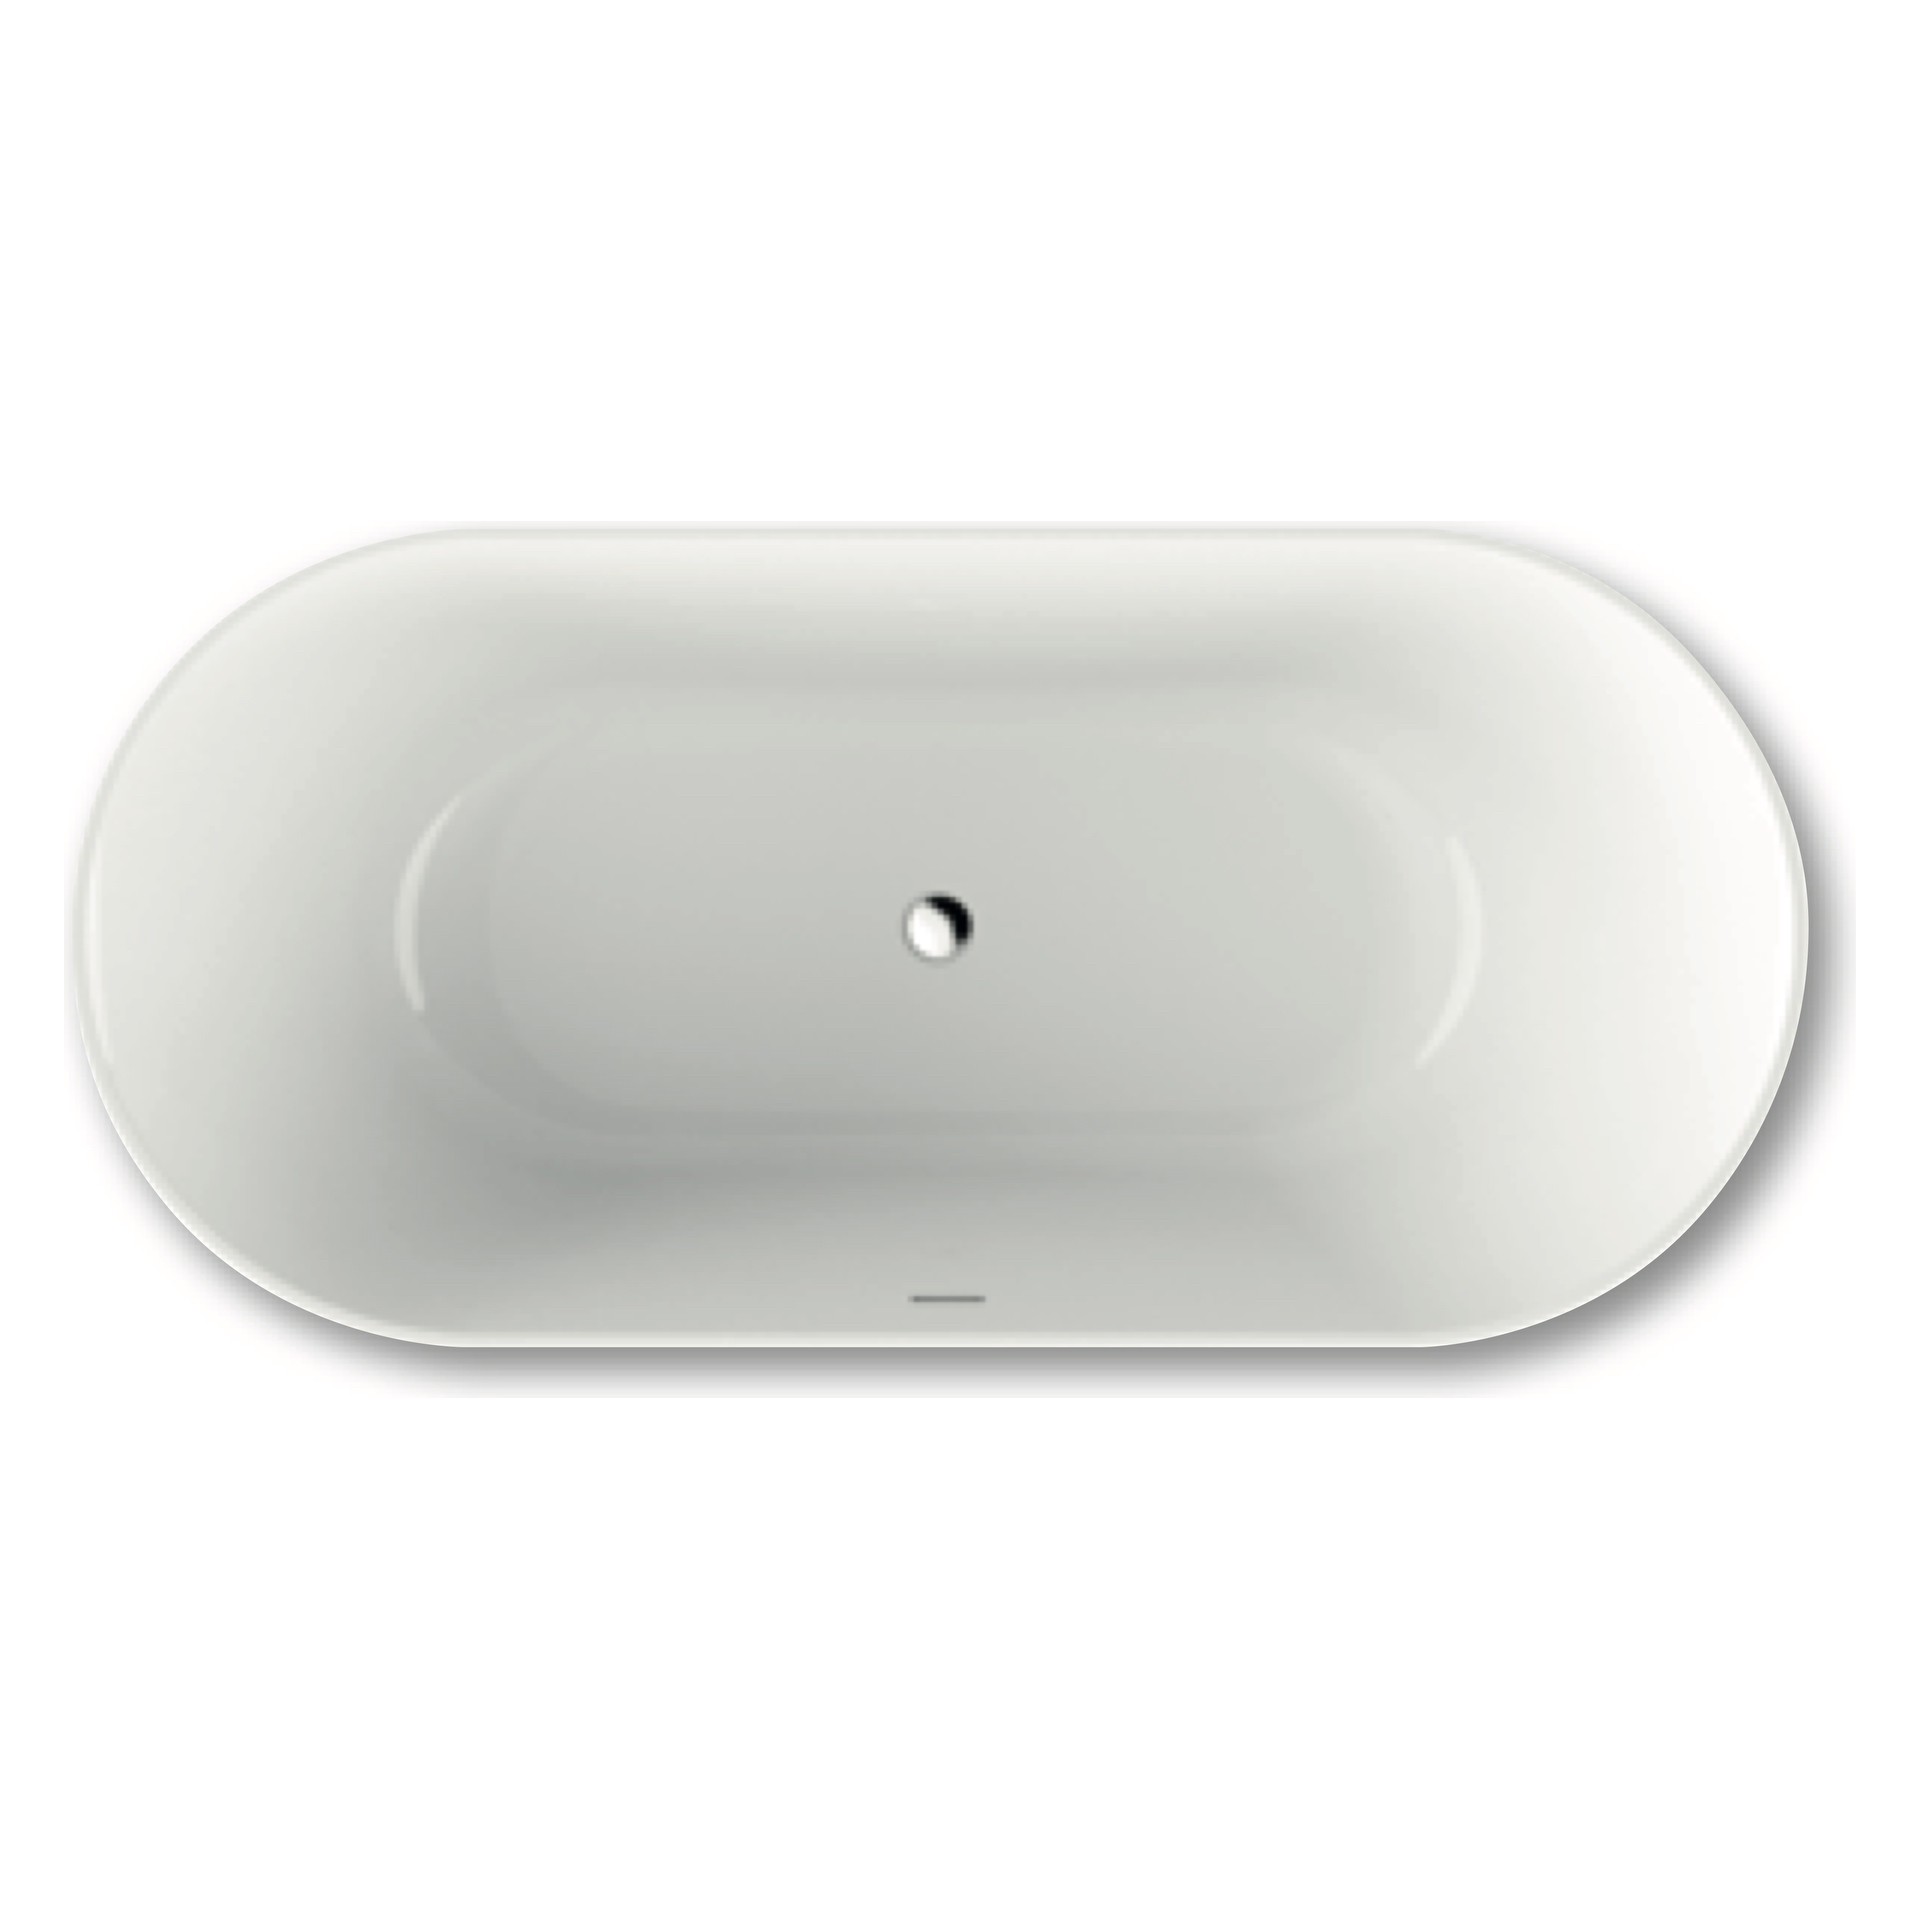 repaBAD Badewanne „Pod“ freistehend oval 180 × 85 cm, Mittelablauf in Weiß